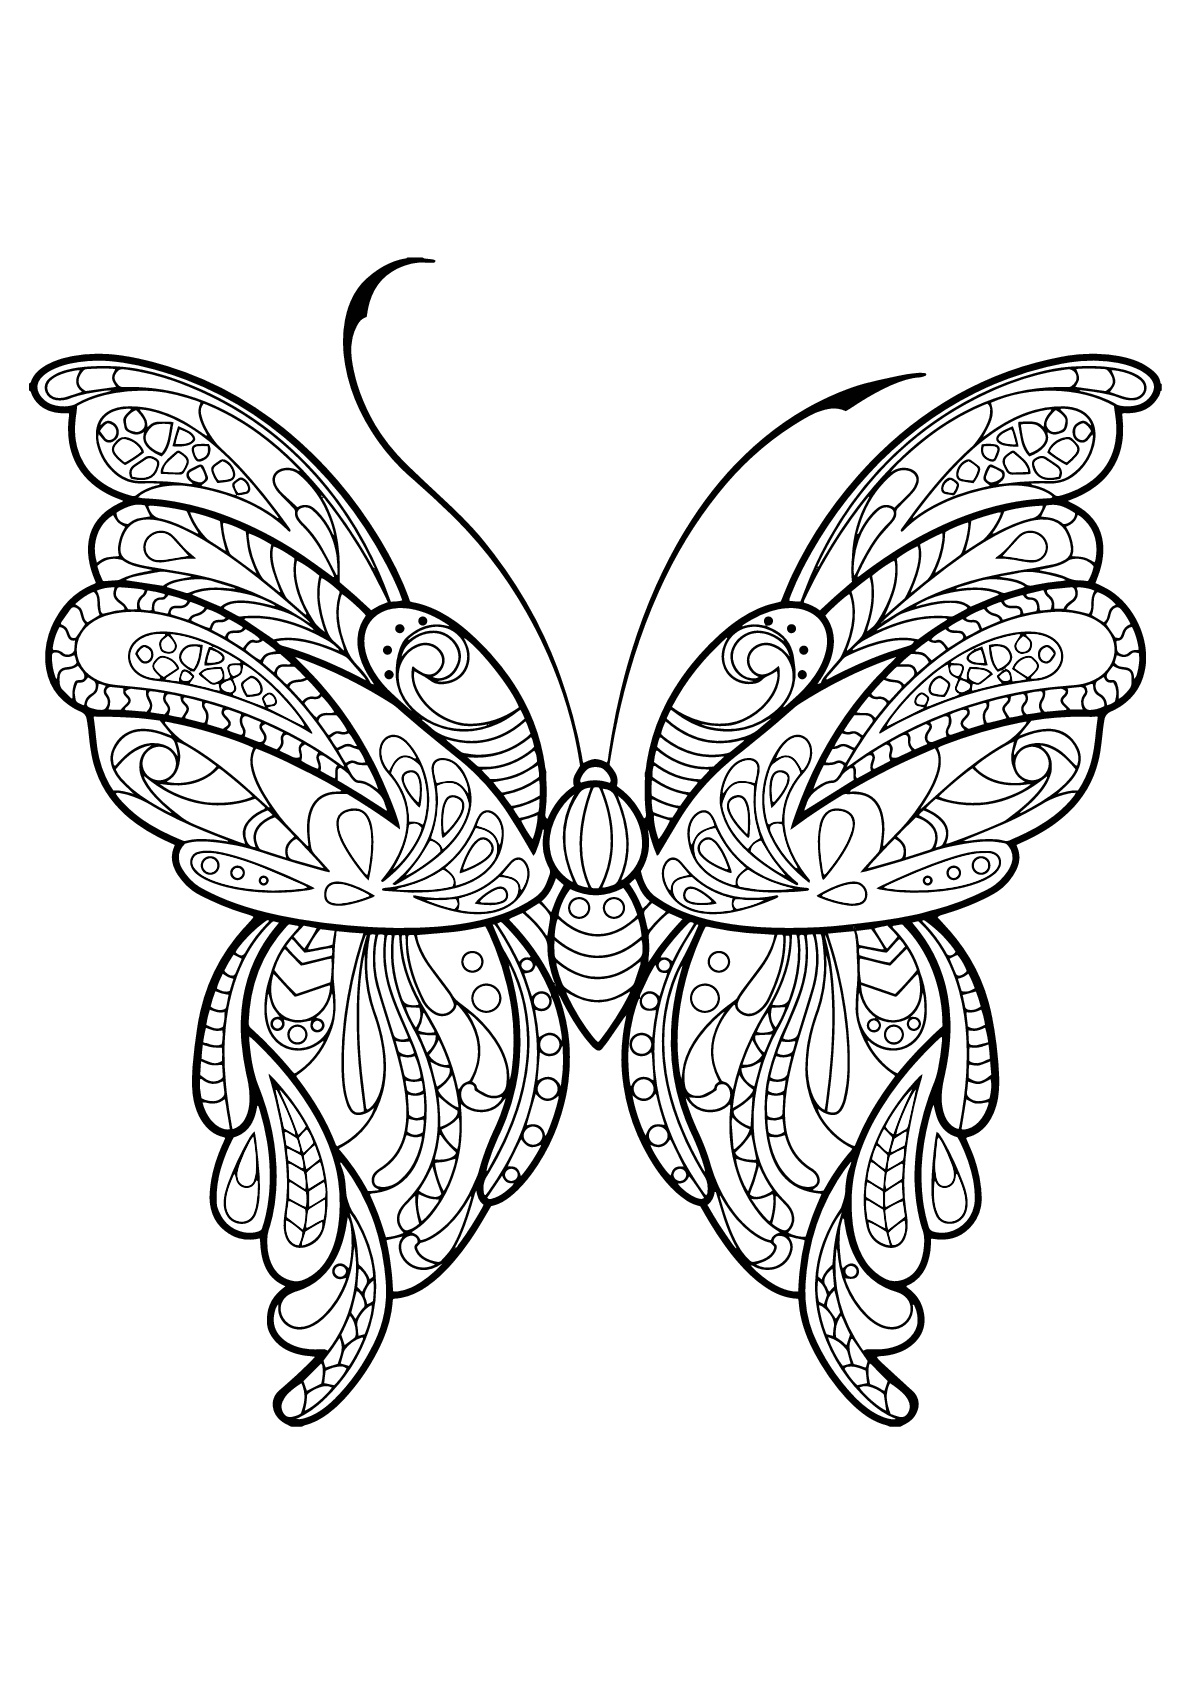 Mariposa con bellos e intrincados dibujos - 16